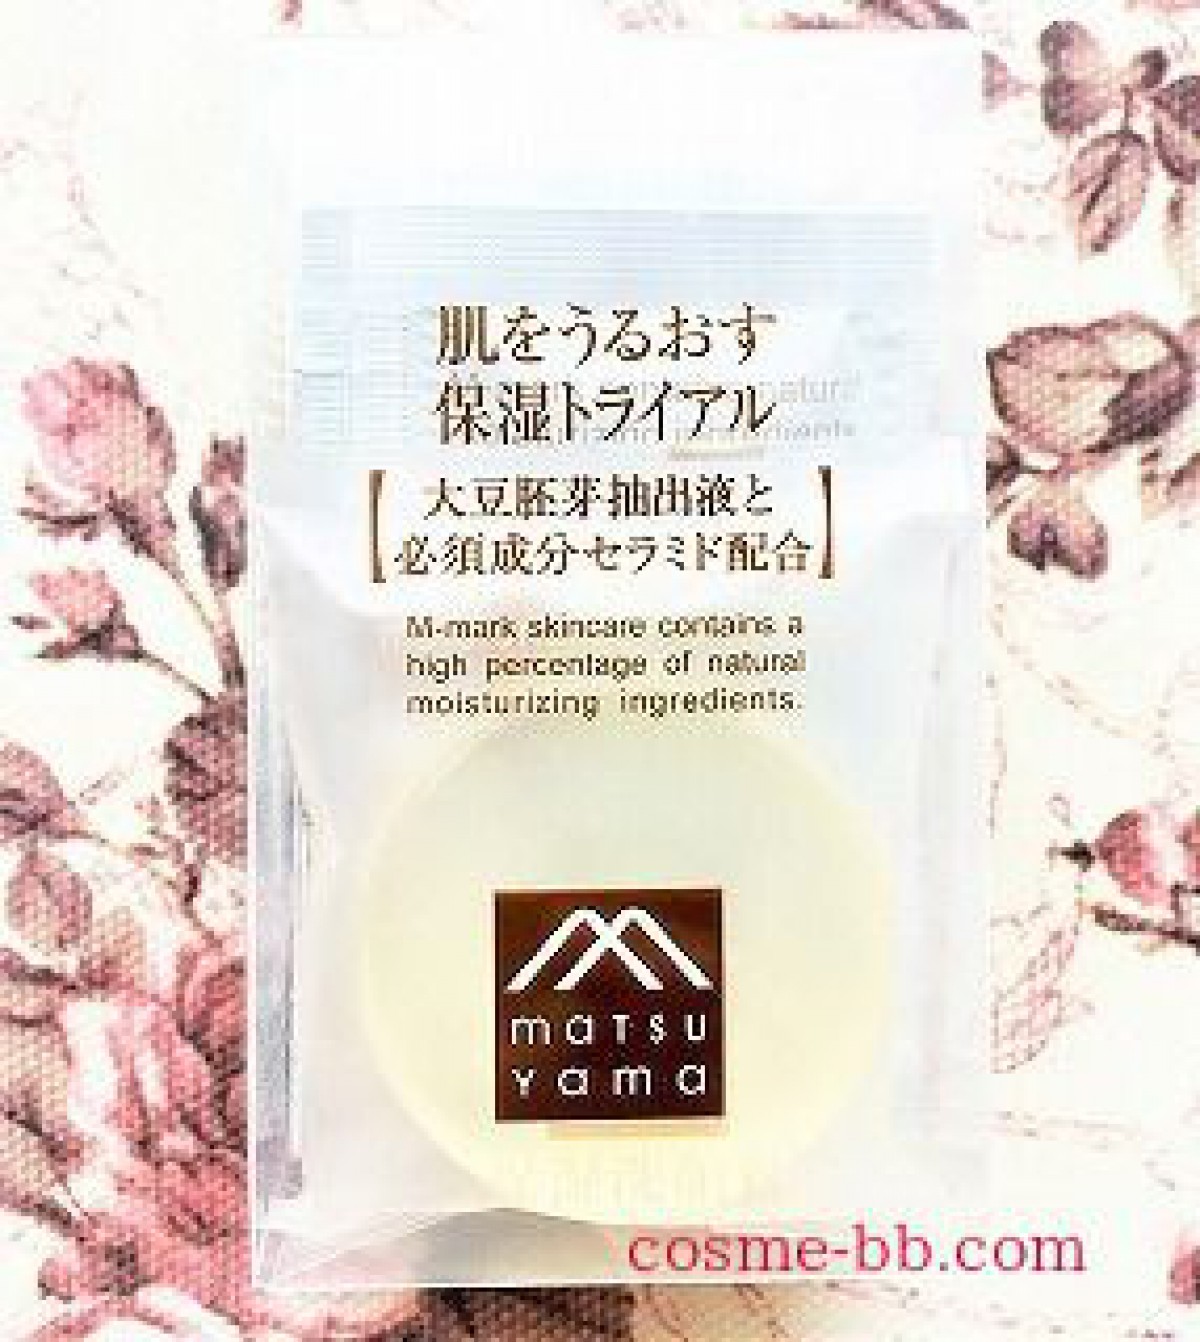 松山油脂「肌をうるおす保湿 化粧水」敏感肌のための低刺激処方・ヒト型セラミド5種配合